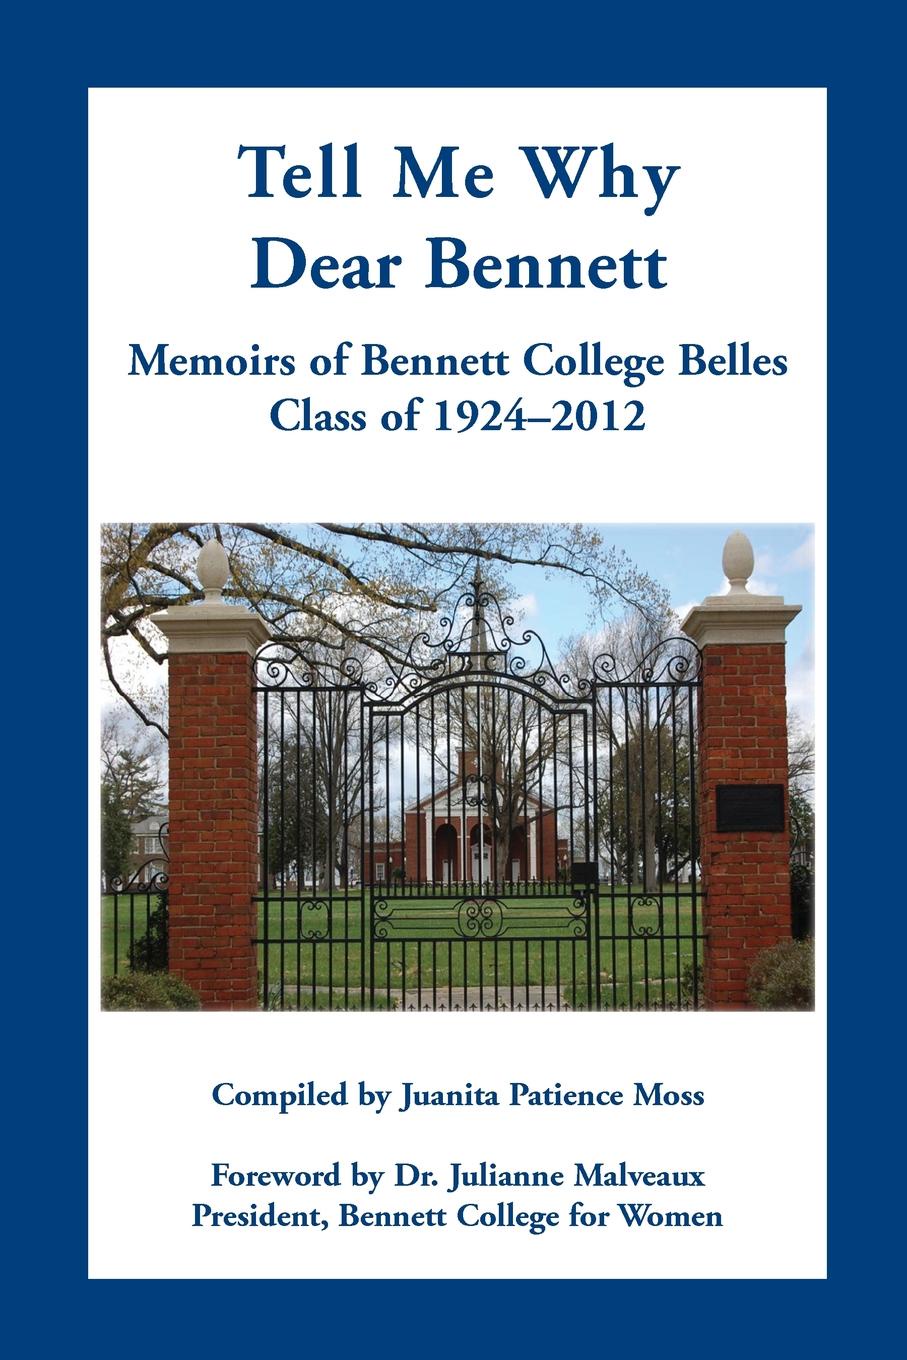 Tell Me Why Dear Bennett. Memoirs of Bennett College Belles, Class of 1924-2012